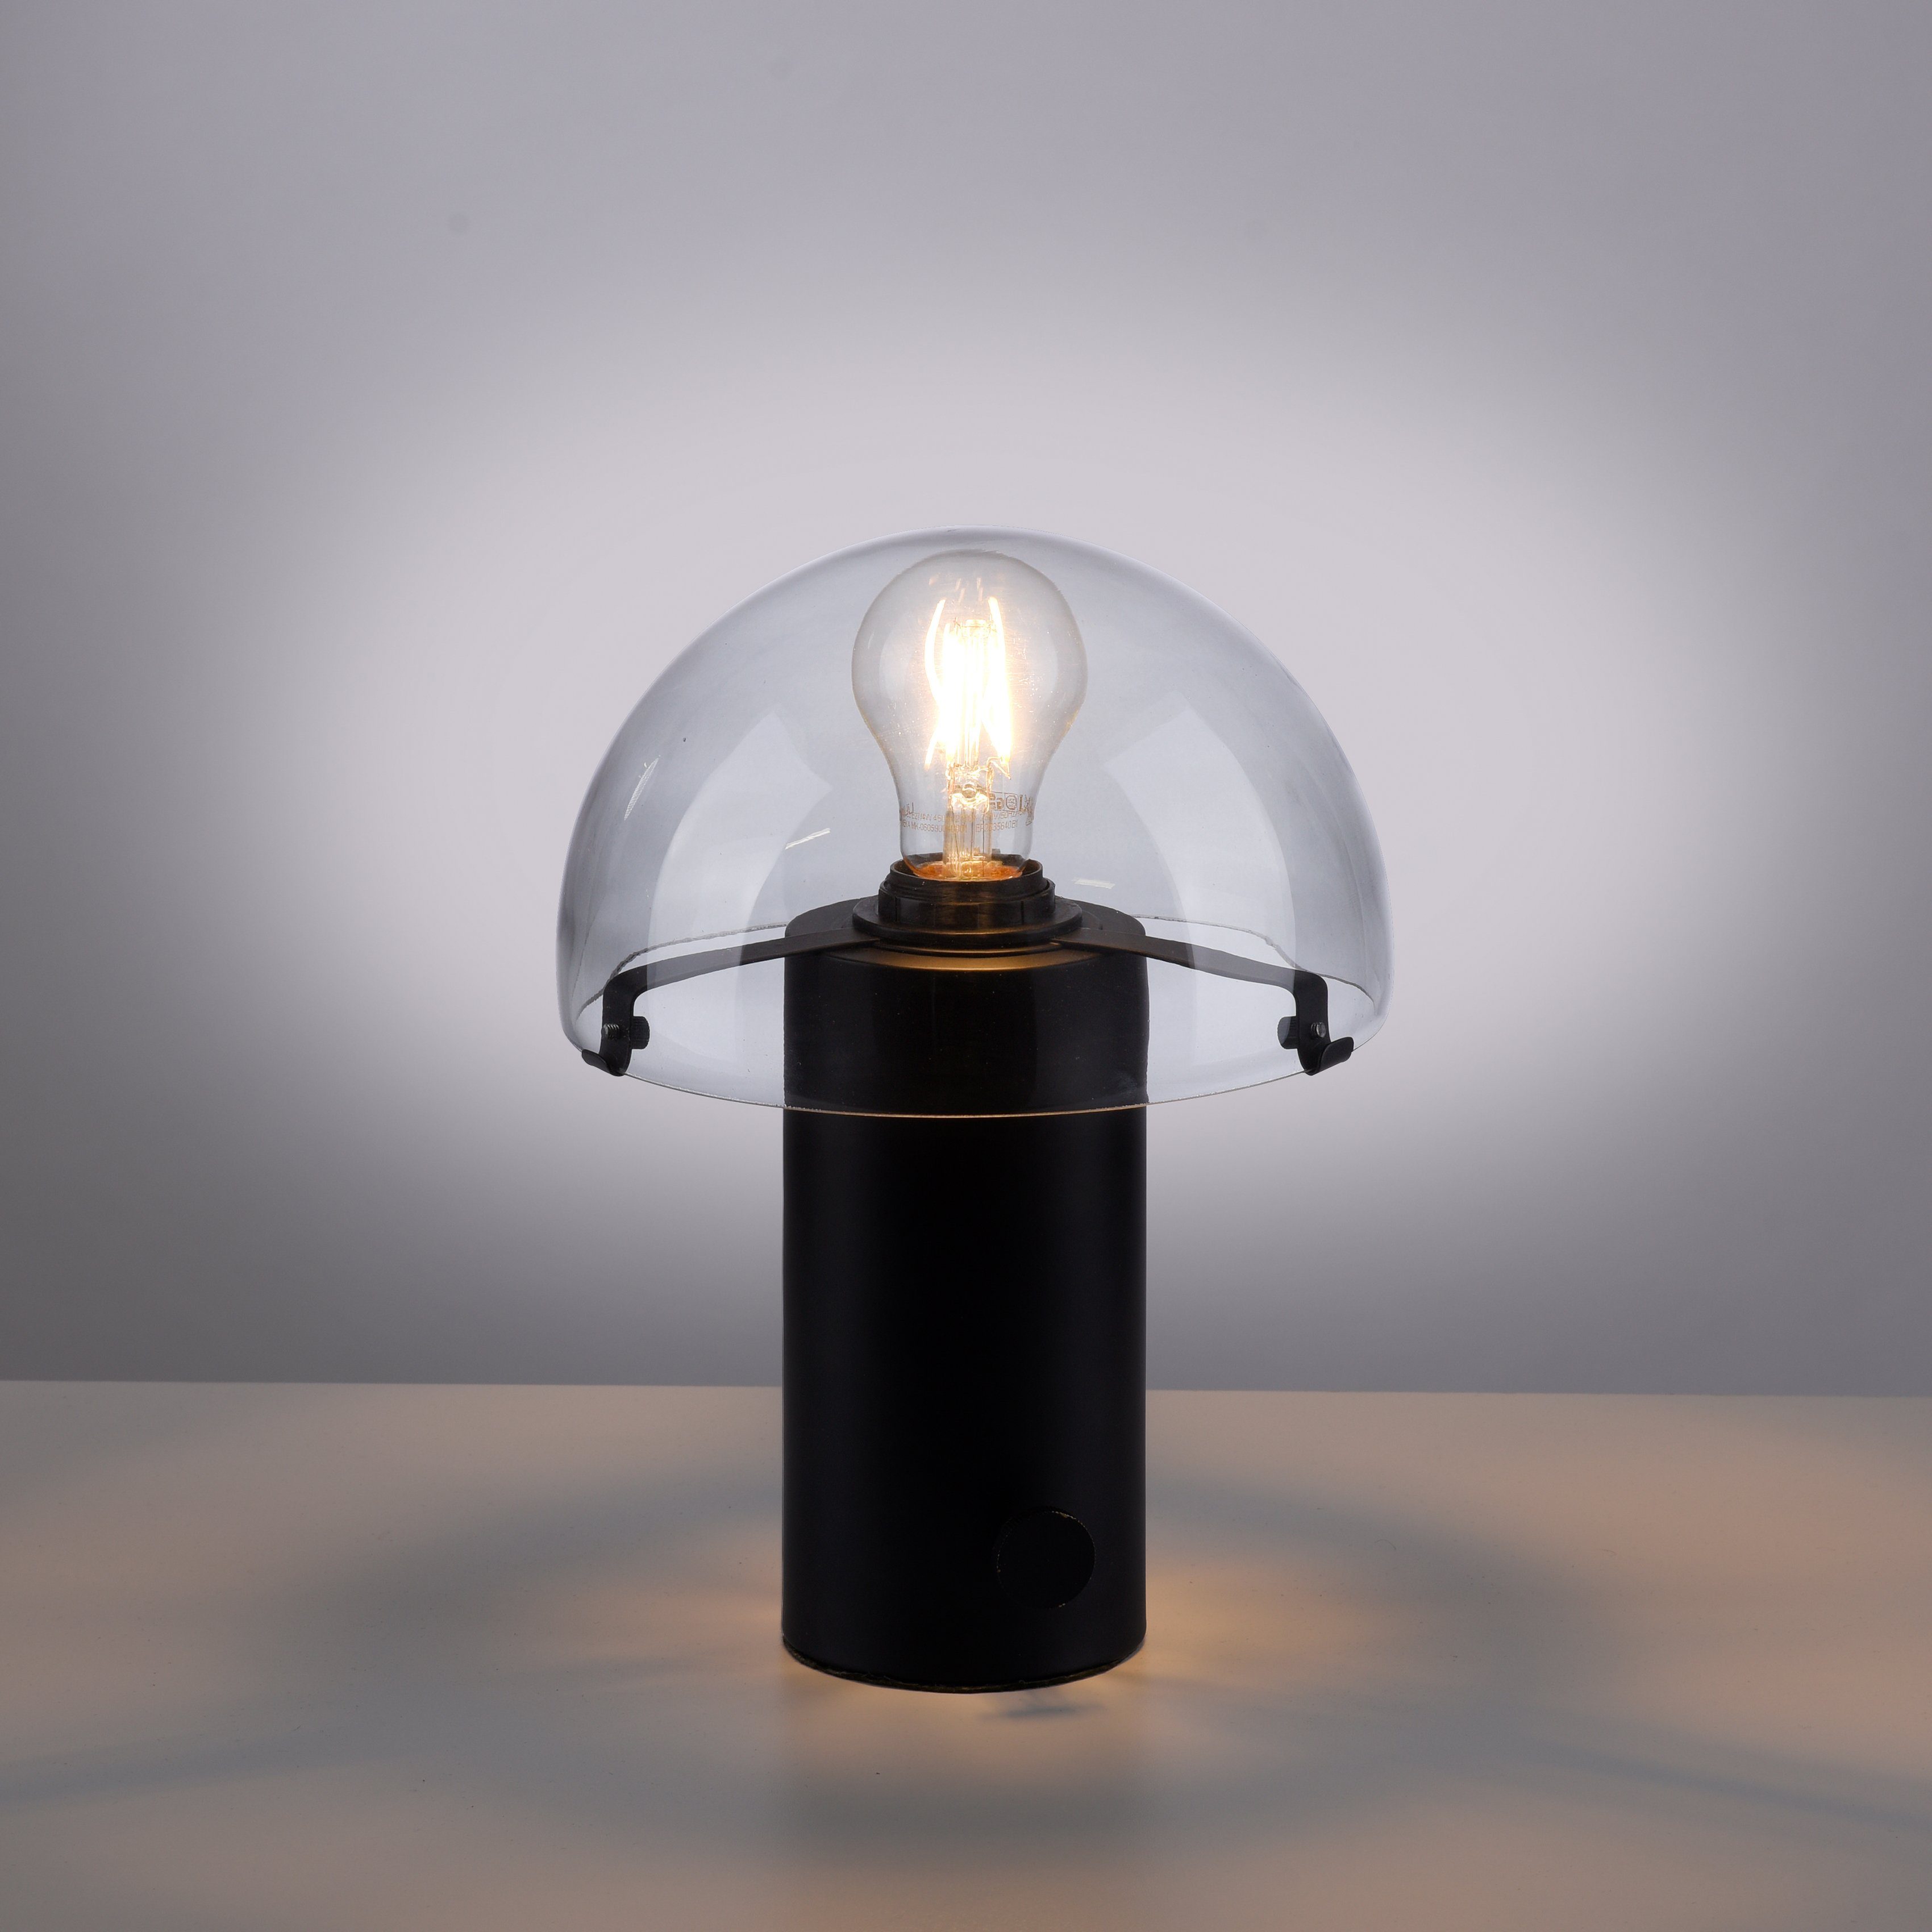 Pilzlampe Drehschalter, schwarz/rauchglas Ein-/Ausschalter, ohne Leuchtmittel, Skickja, Tischleuchte andas Tischlampe skandinavisch E27,